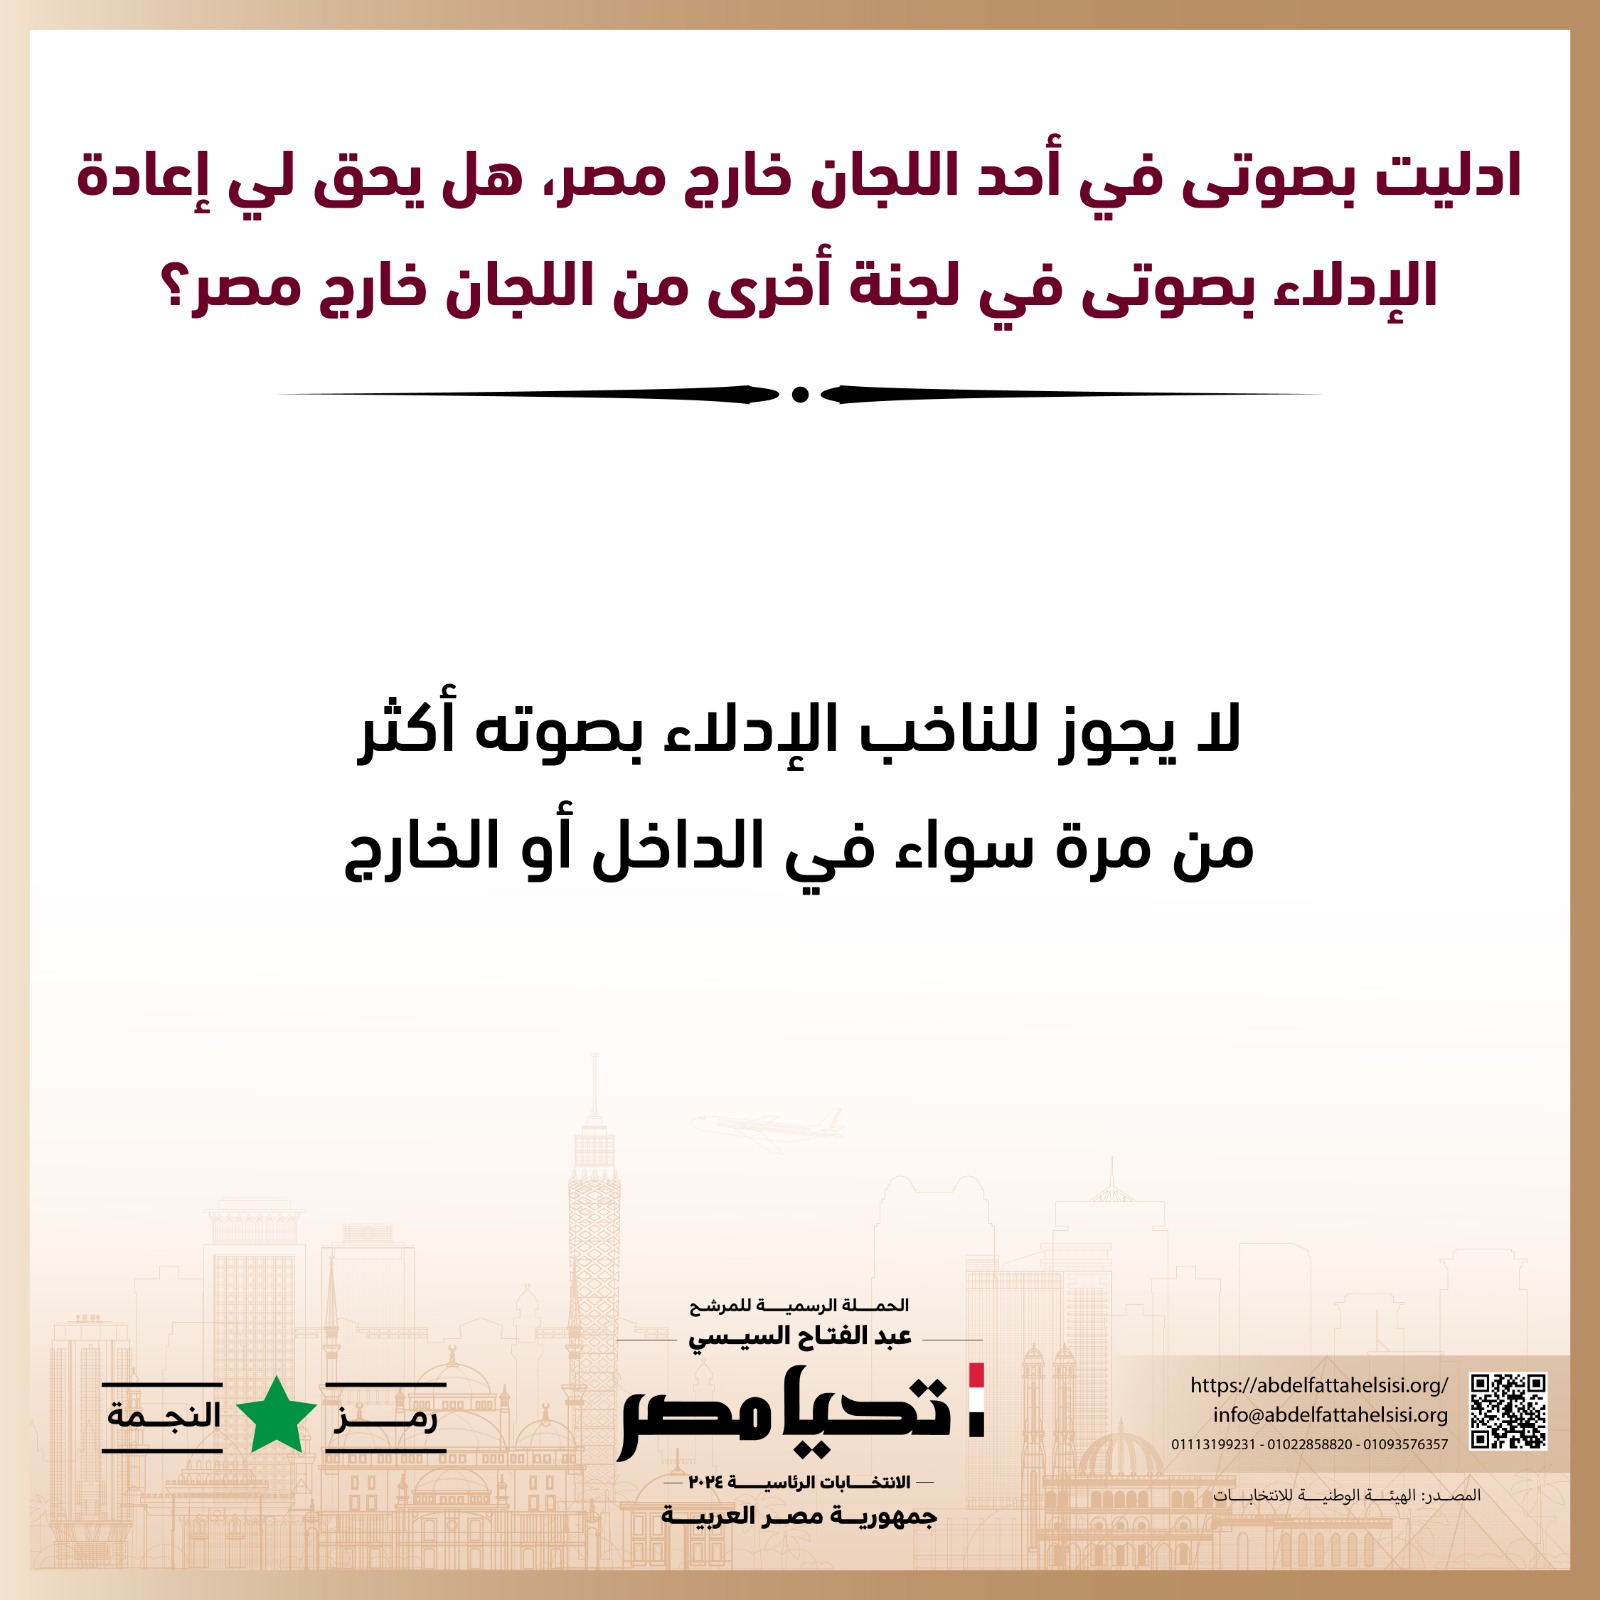 الحملة الرسمية للمرشح عبد الفتاح السيسي  (5)